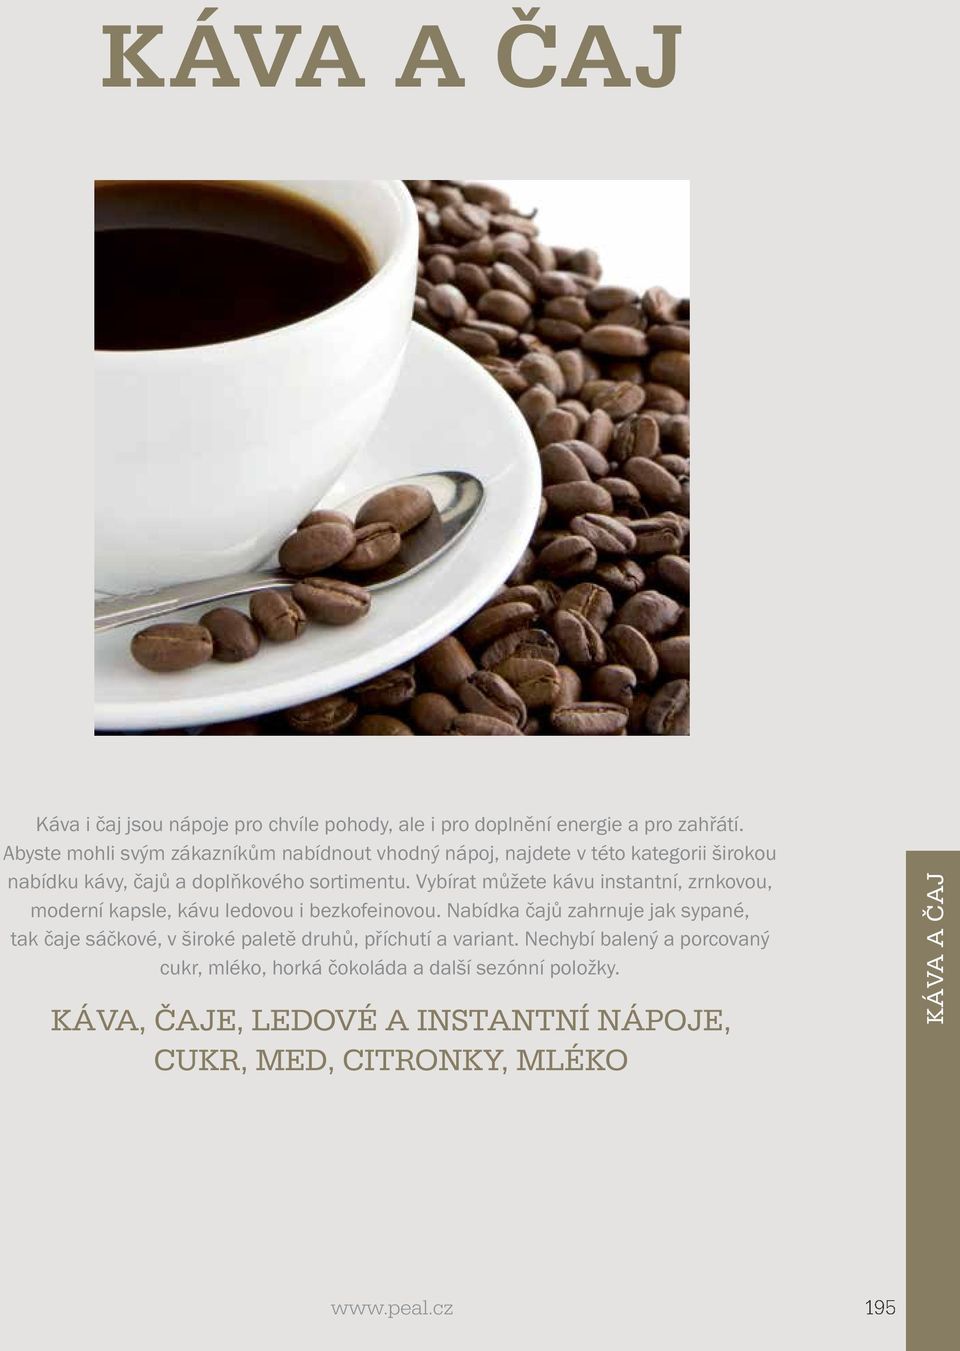 Vybírat můžete kávu instantní, zrnkovou, moderní kapsle, kávu ledovou i bezkofeinovou.